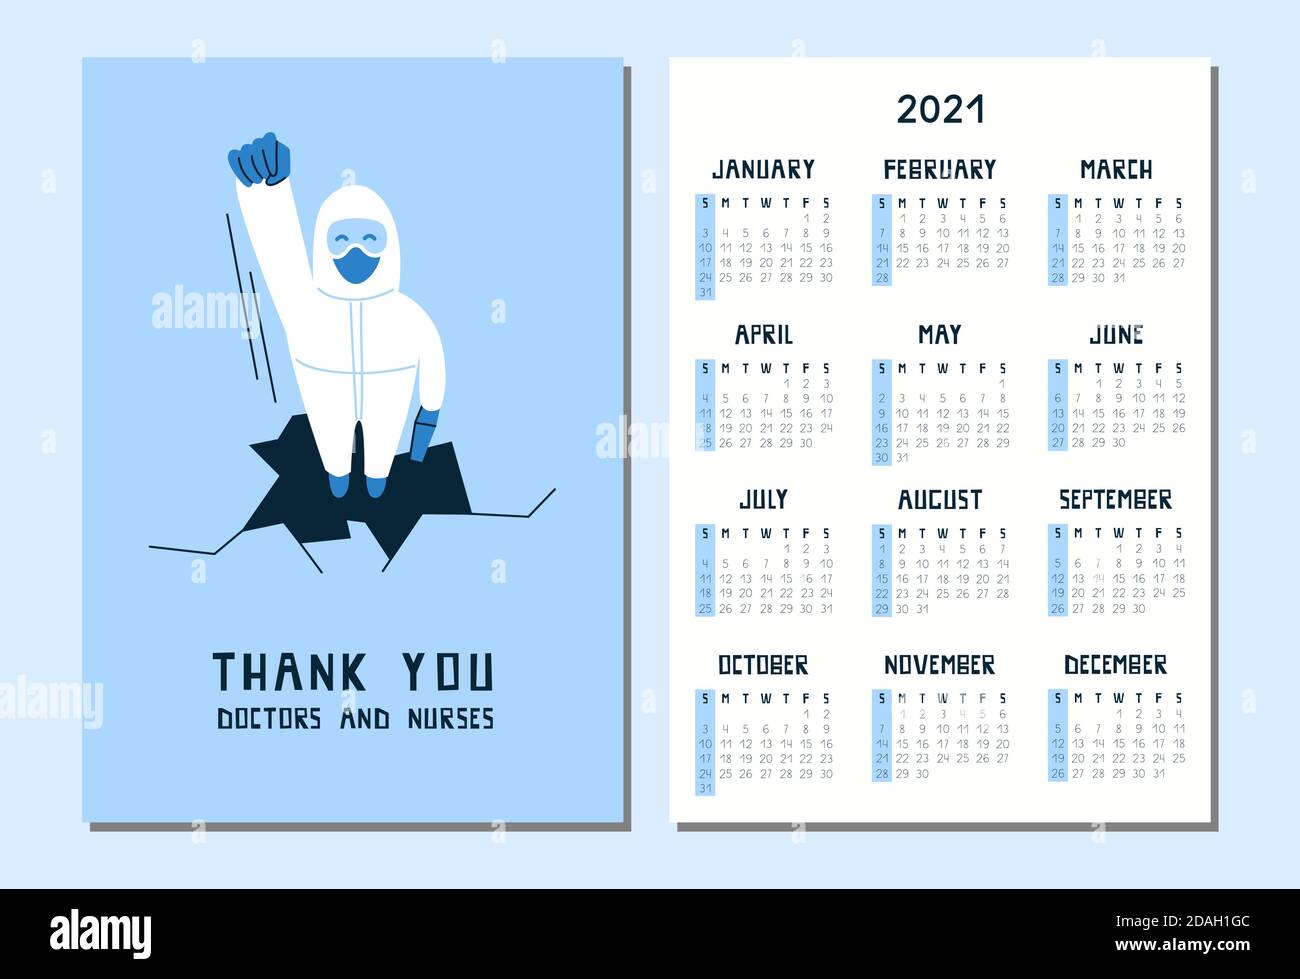 Frohes neues Jahr 2021. Kalender im A4-Format. Vektor-Illustration eines Arztes in weißem Hazmat Anzug und Maske. Vielen Dank an Ärzte und Krankenschwestern. Coronavirus Stock Vektor